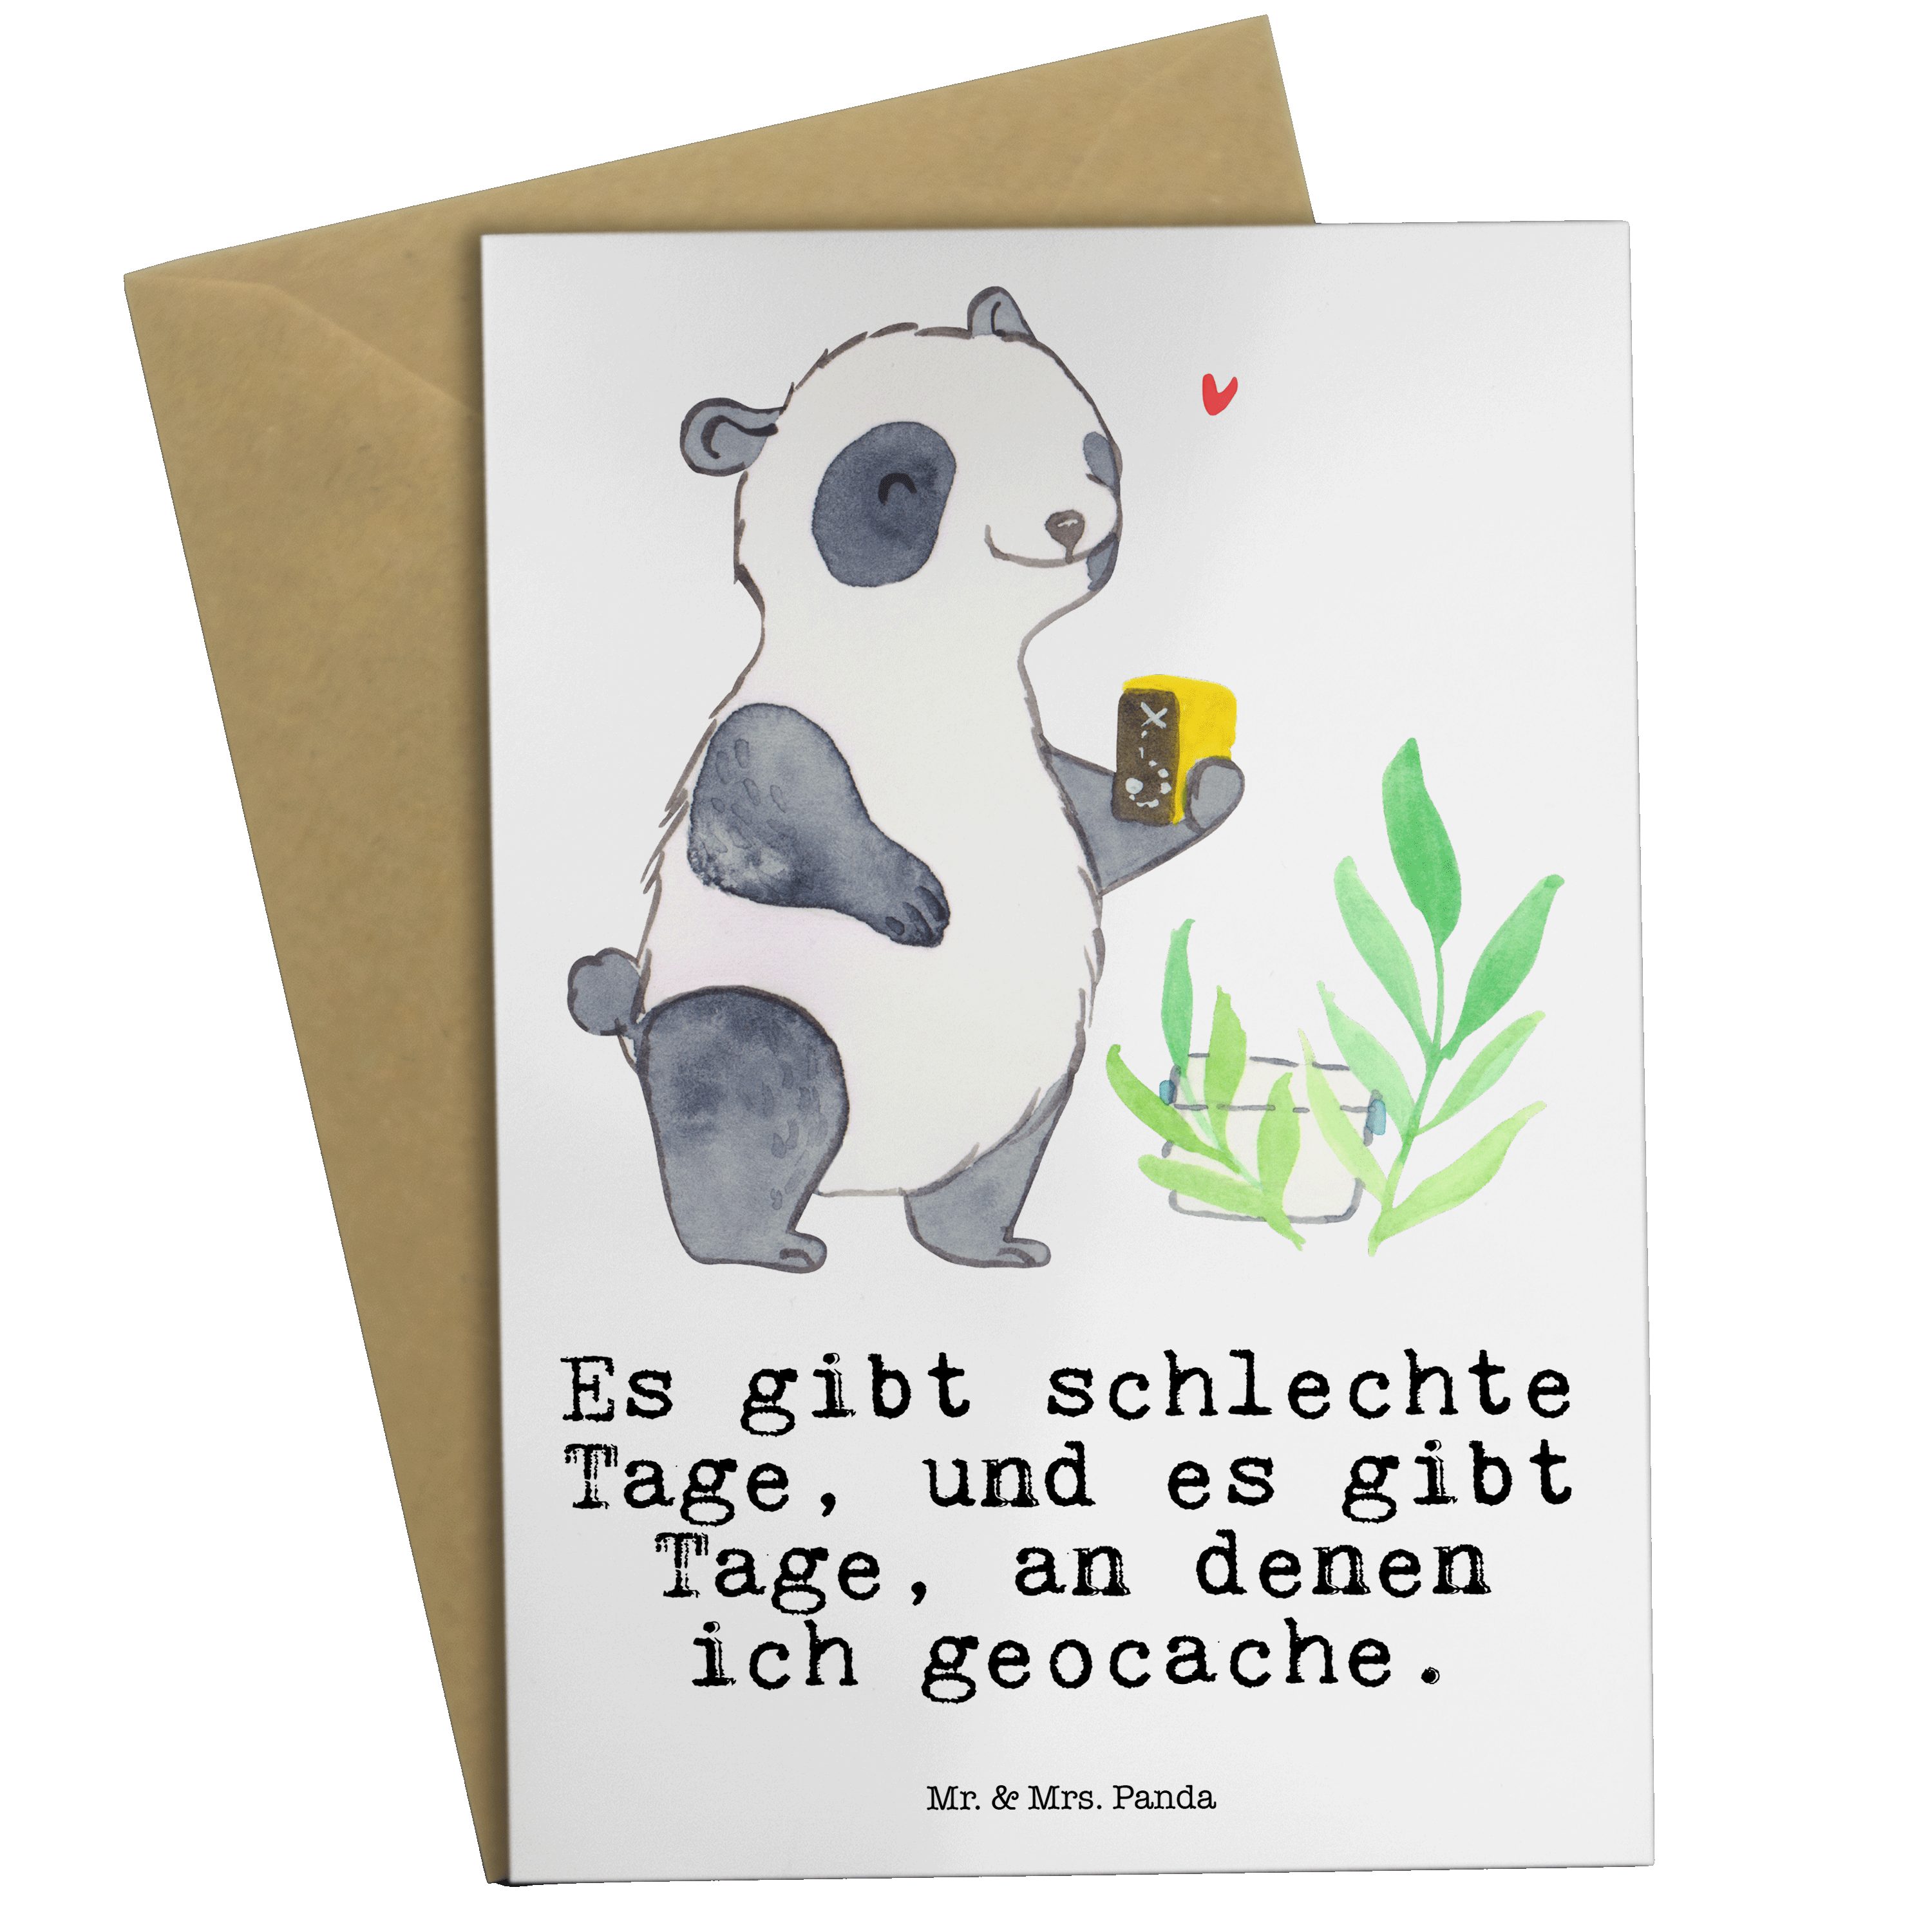 Mr. & Mrs. Panda Grußkarte Panda Geocaching Tage - Weiß - Geschenk, Auszeichnung, Klappkarte, GP